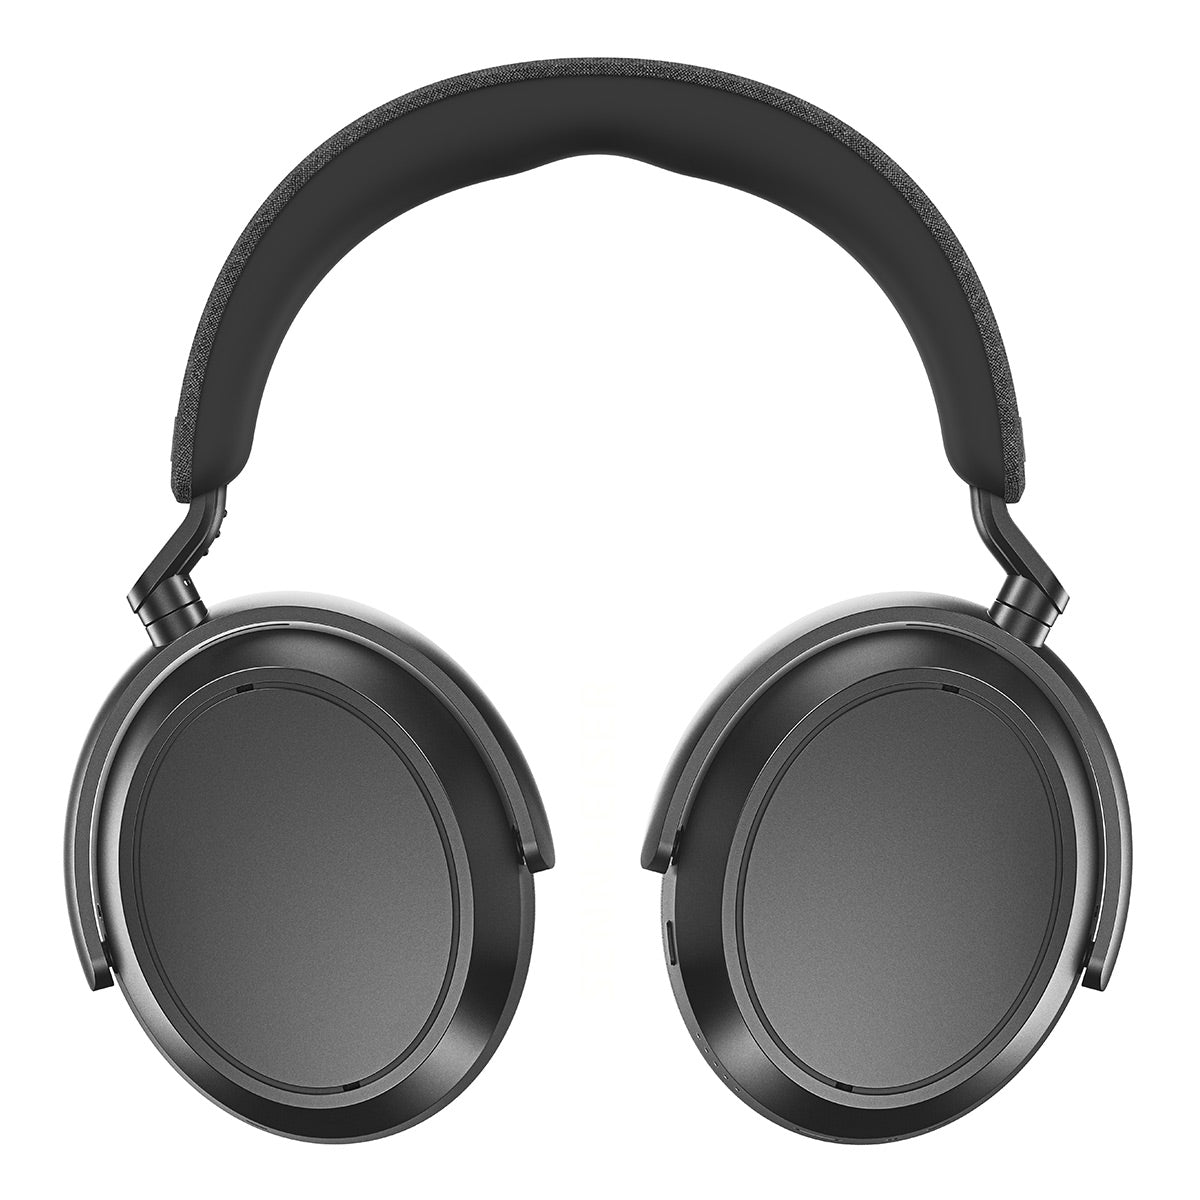 Sennheiser Momentum 4 Wireless Noise-Canceling Headphones - Denim (Open Box)